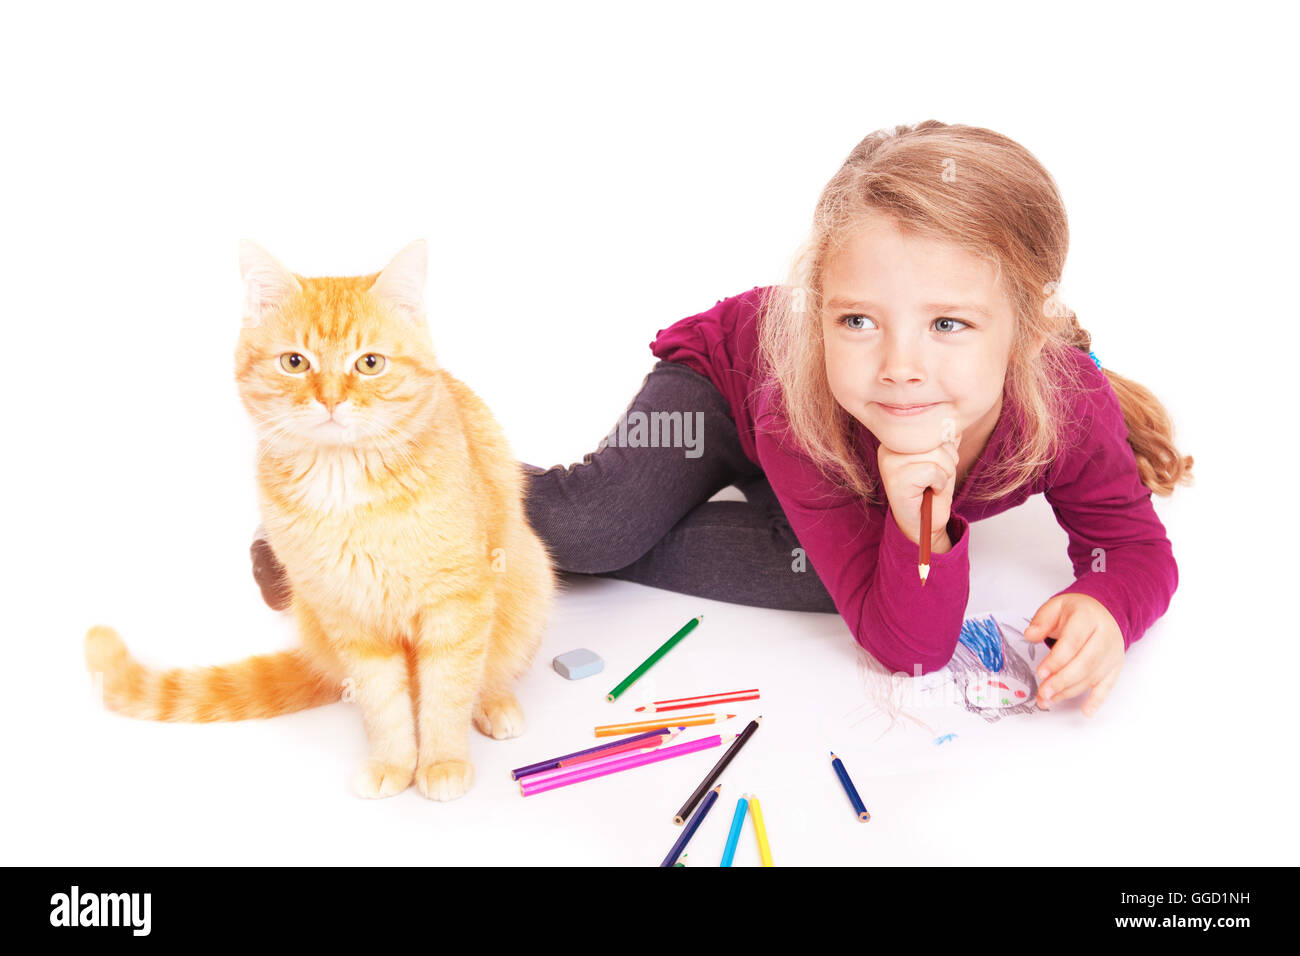 Petite fille mignonne avec des crayons de couleur et chat rouge se trouvant sur le plancher sur un fond blanc Banque D'Images